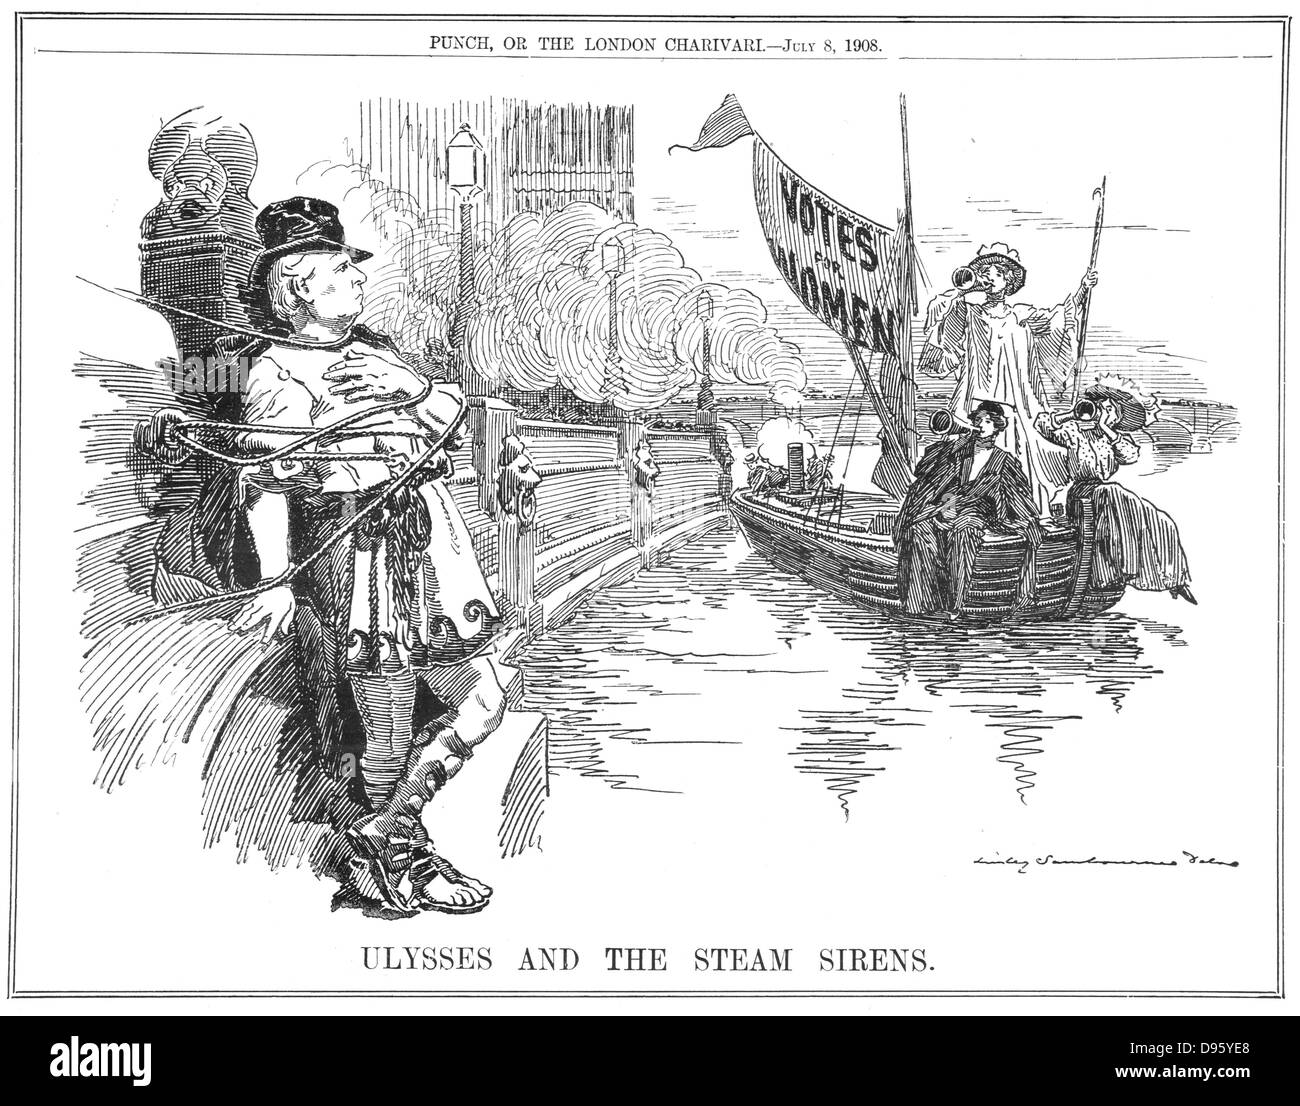 Le Premier ministre britannique Herbert Asquith, cinglant lui-même pour le remblai à Westminster pour se protéger de la sirène dans le vapeur appelant à voter pour les femmes. Edward Linley Sambourne dessin animé par de 'Punch', Londres, 8 juillet 1908. Banque D'Images